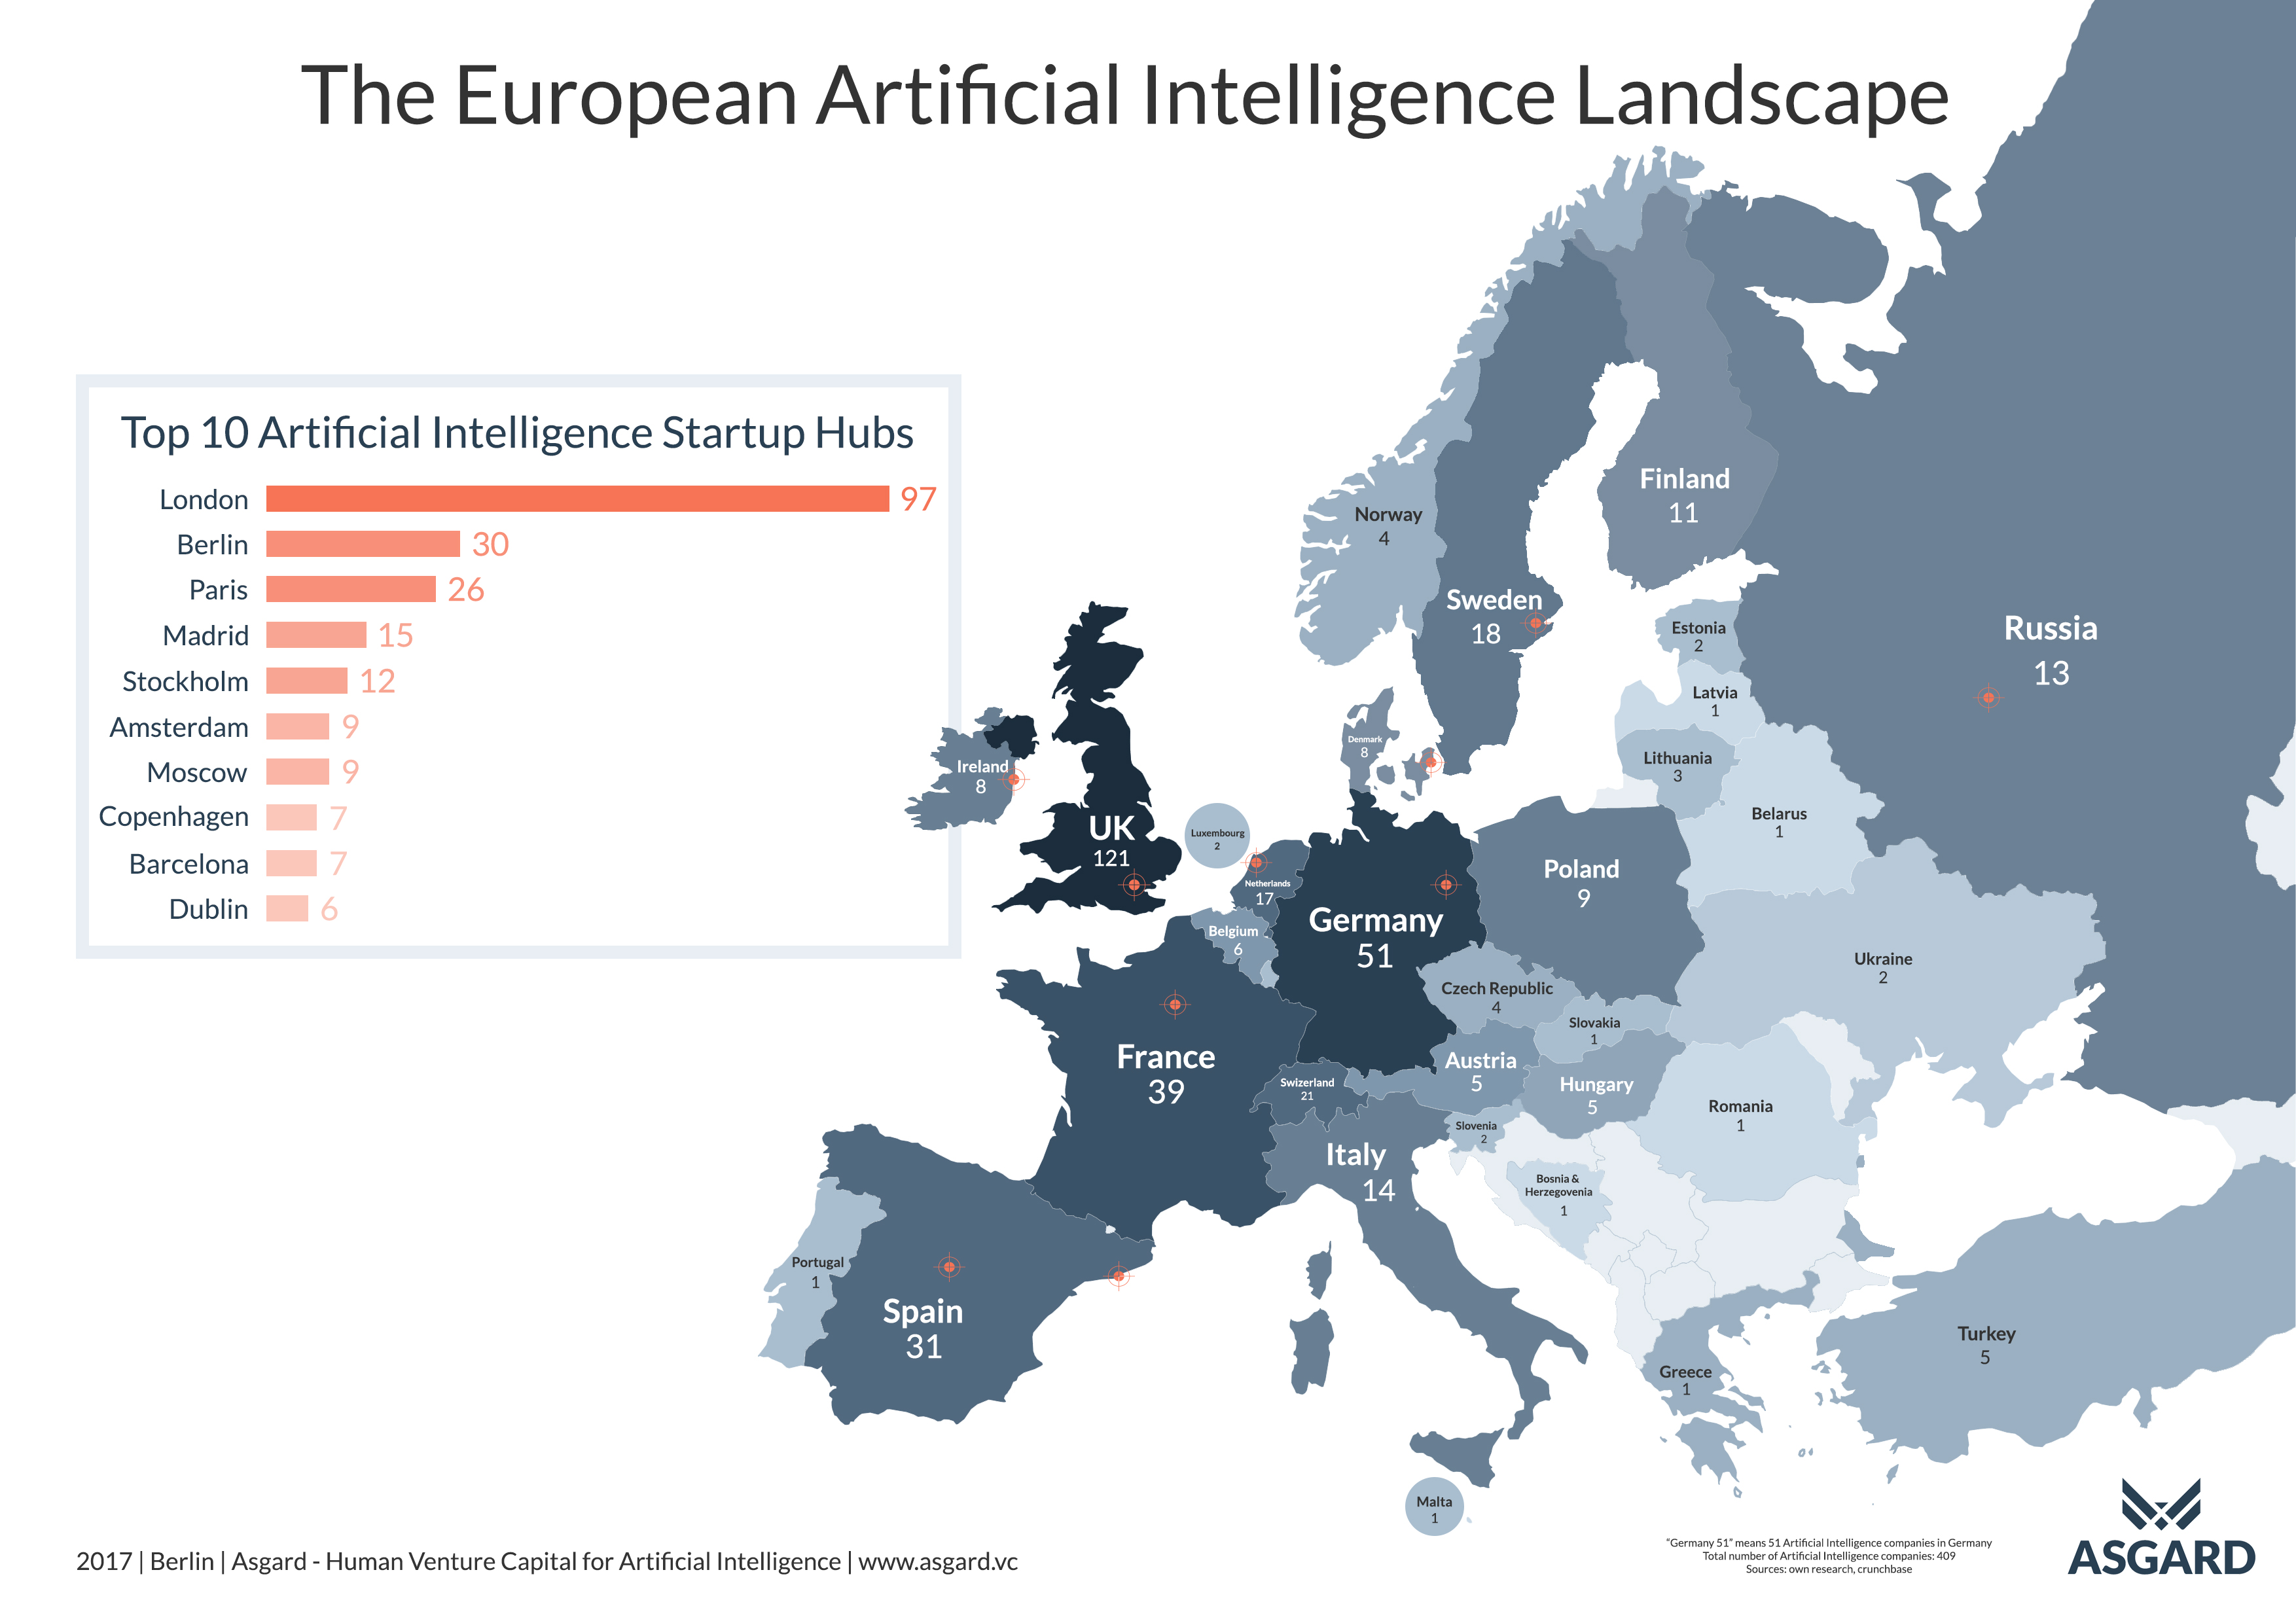 El mapa de la Inteligencia Artificial en Europa